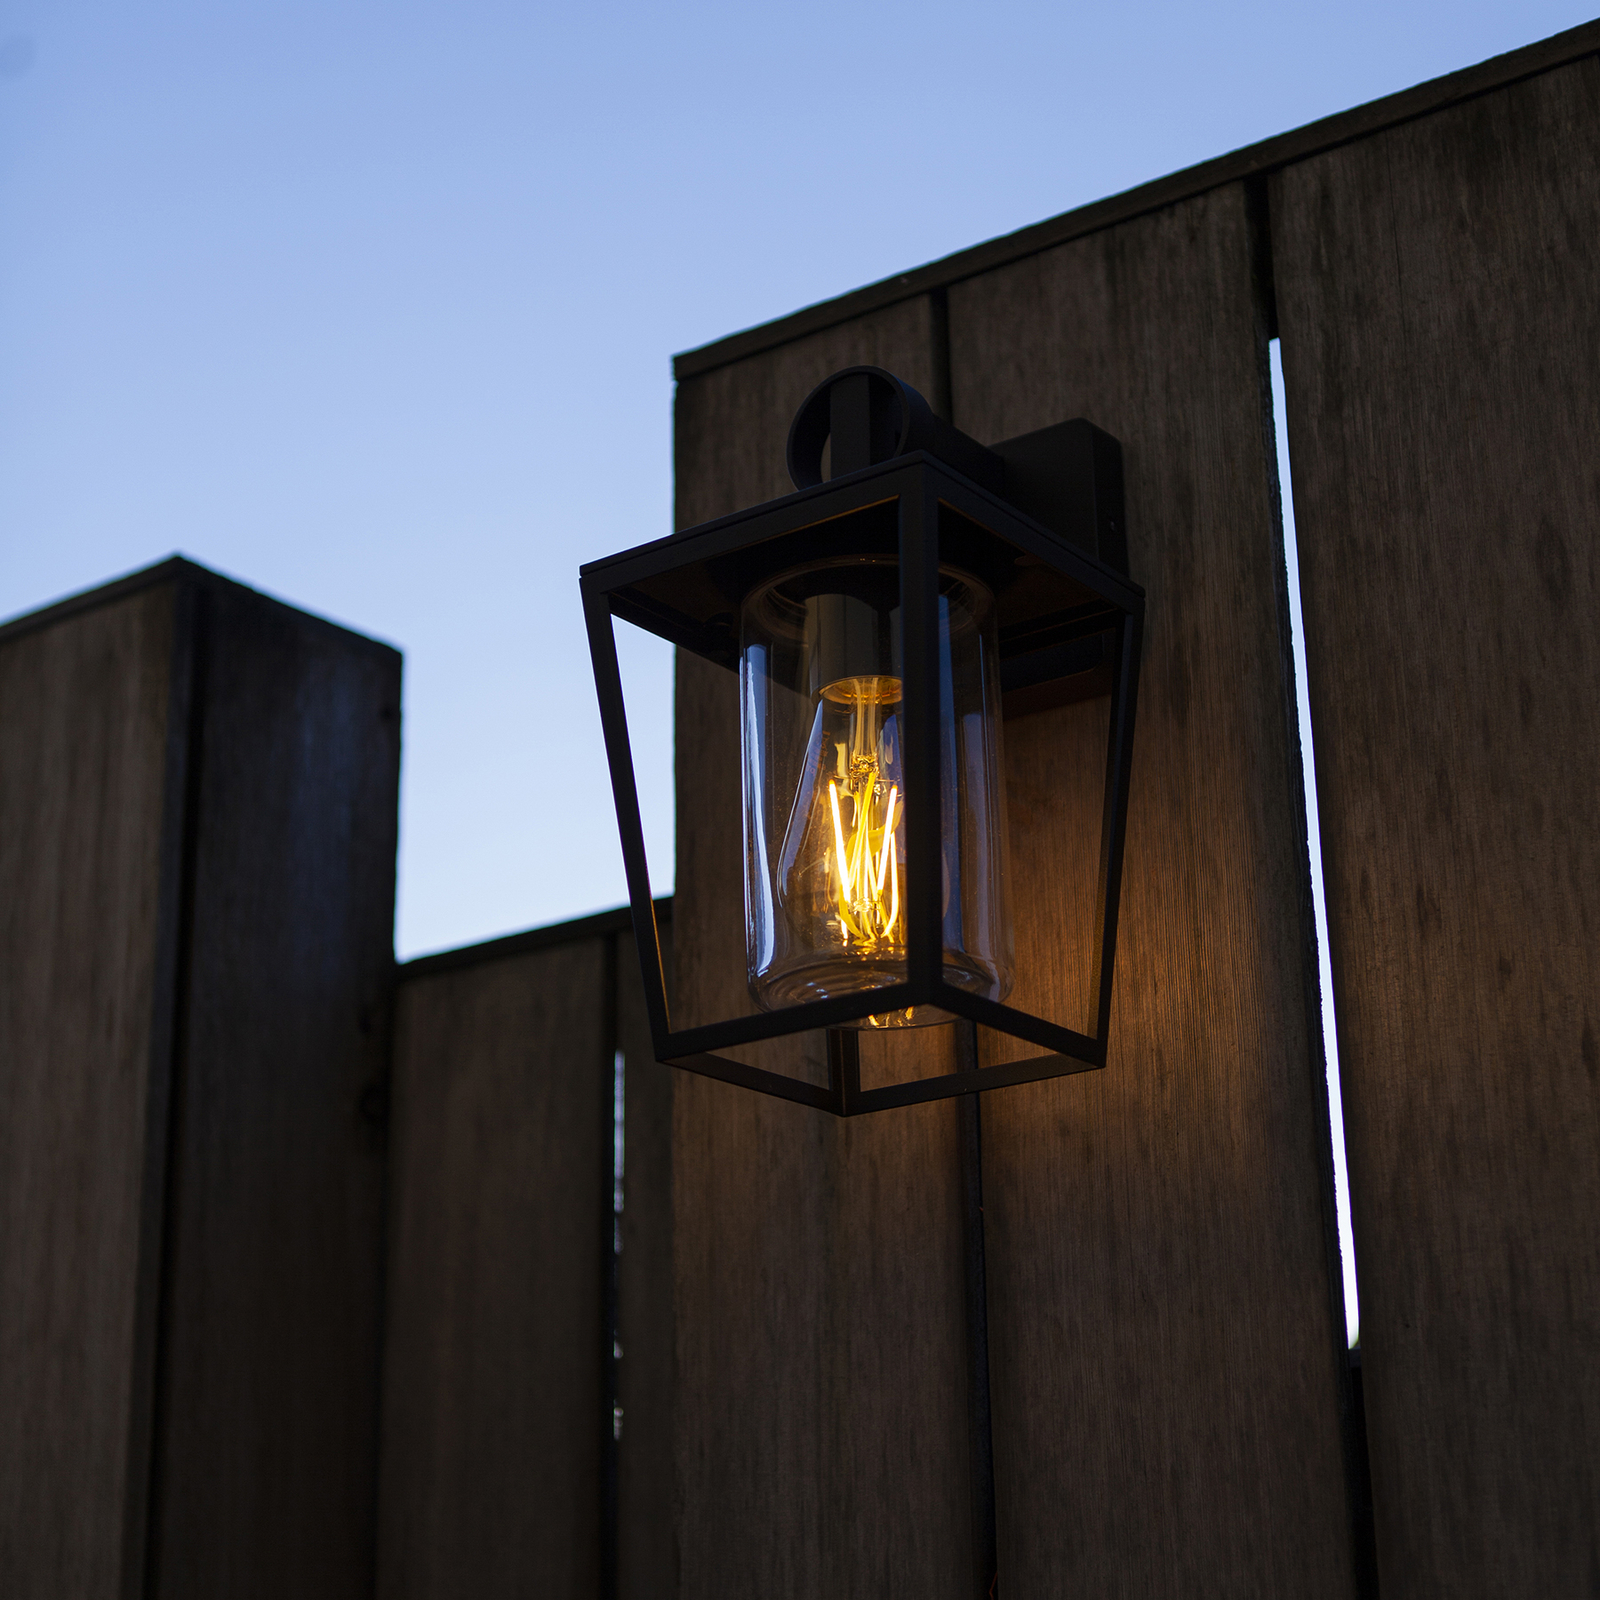 West outdoor wall light, cast aluminium, glass